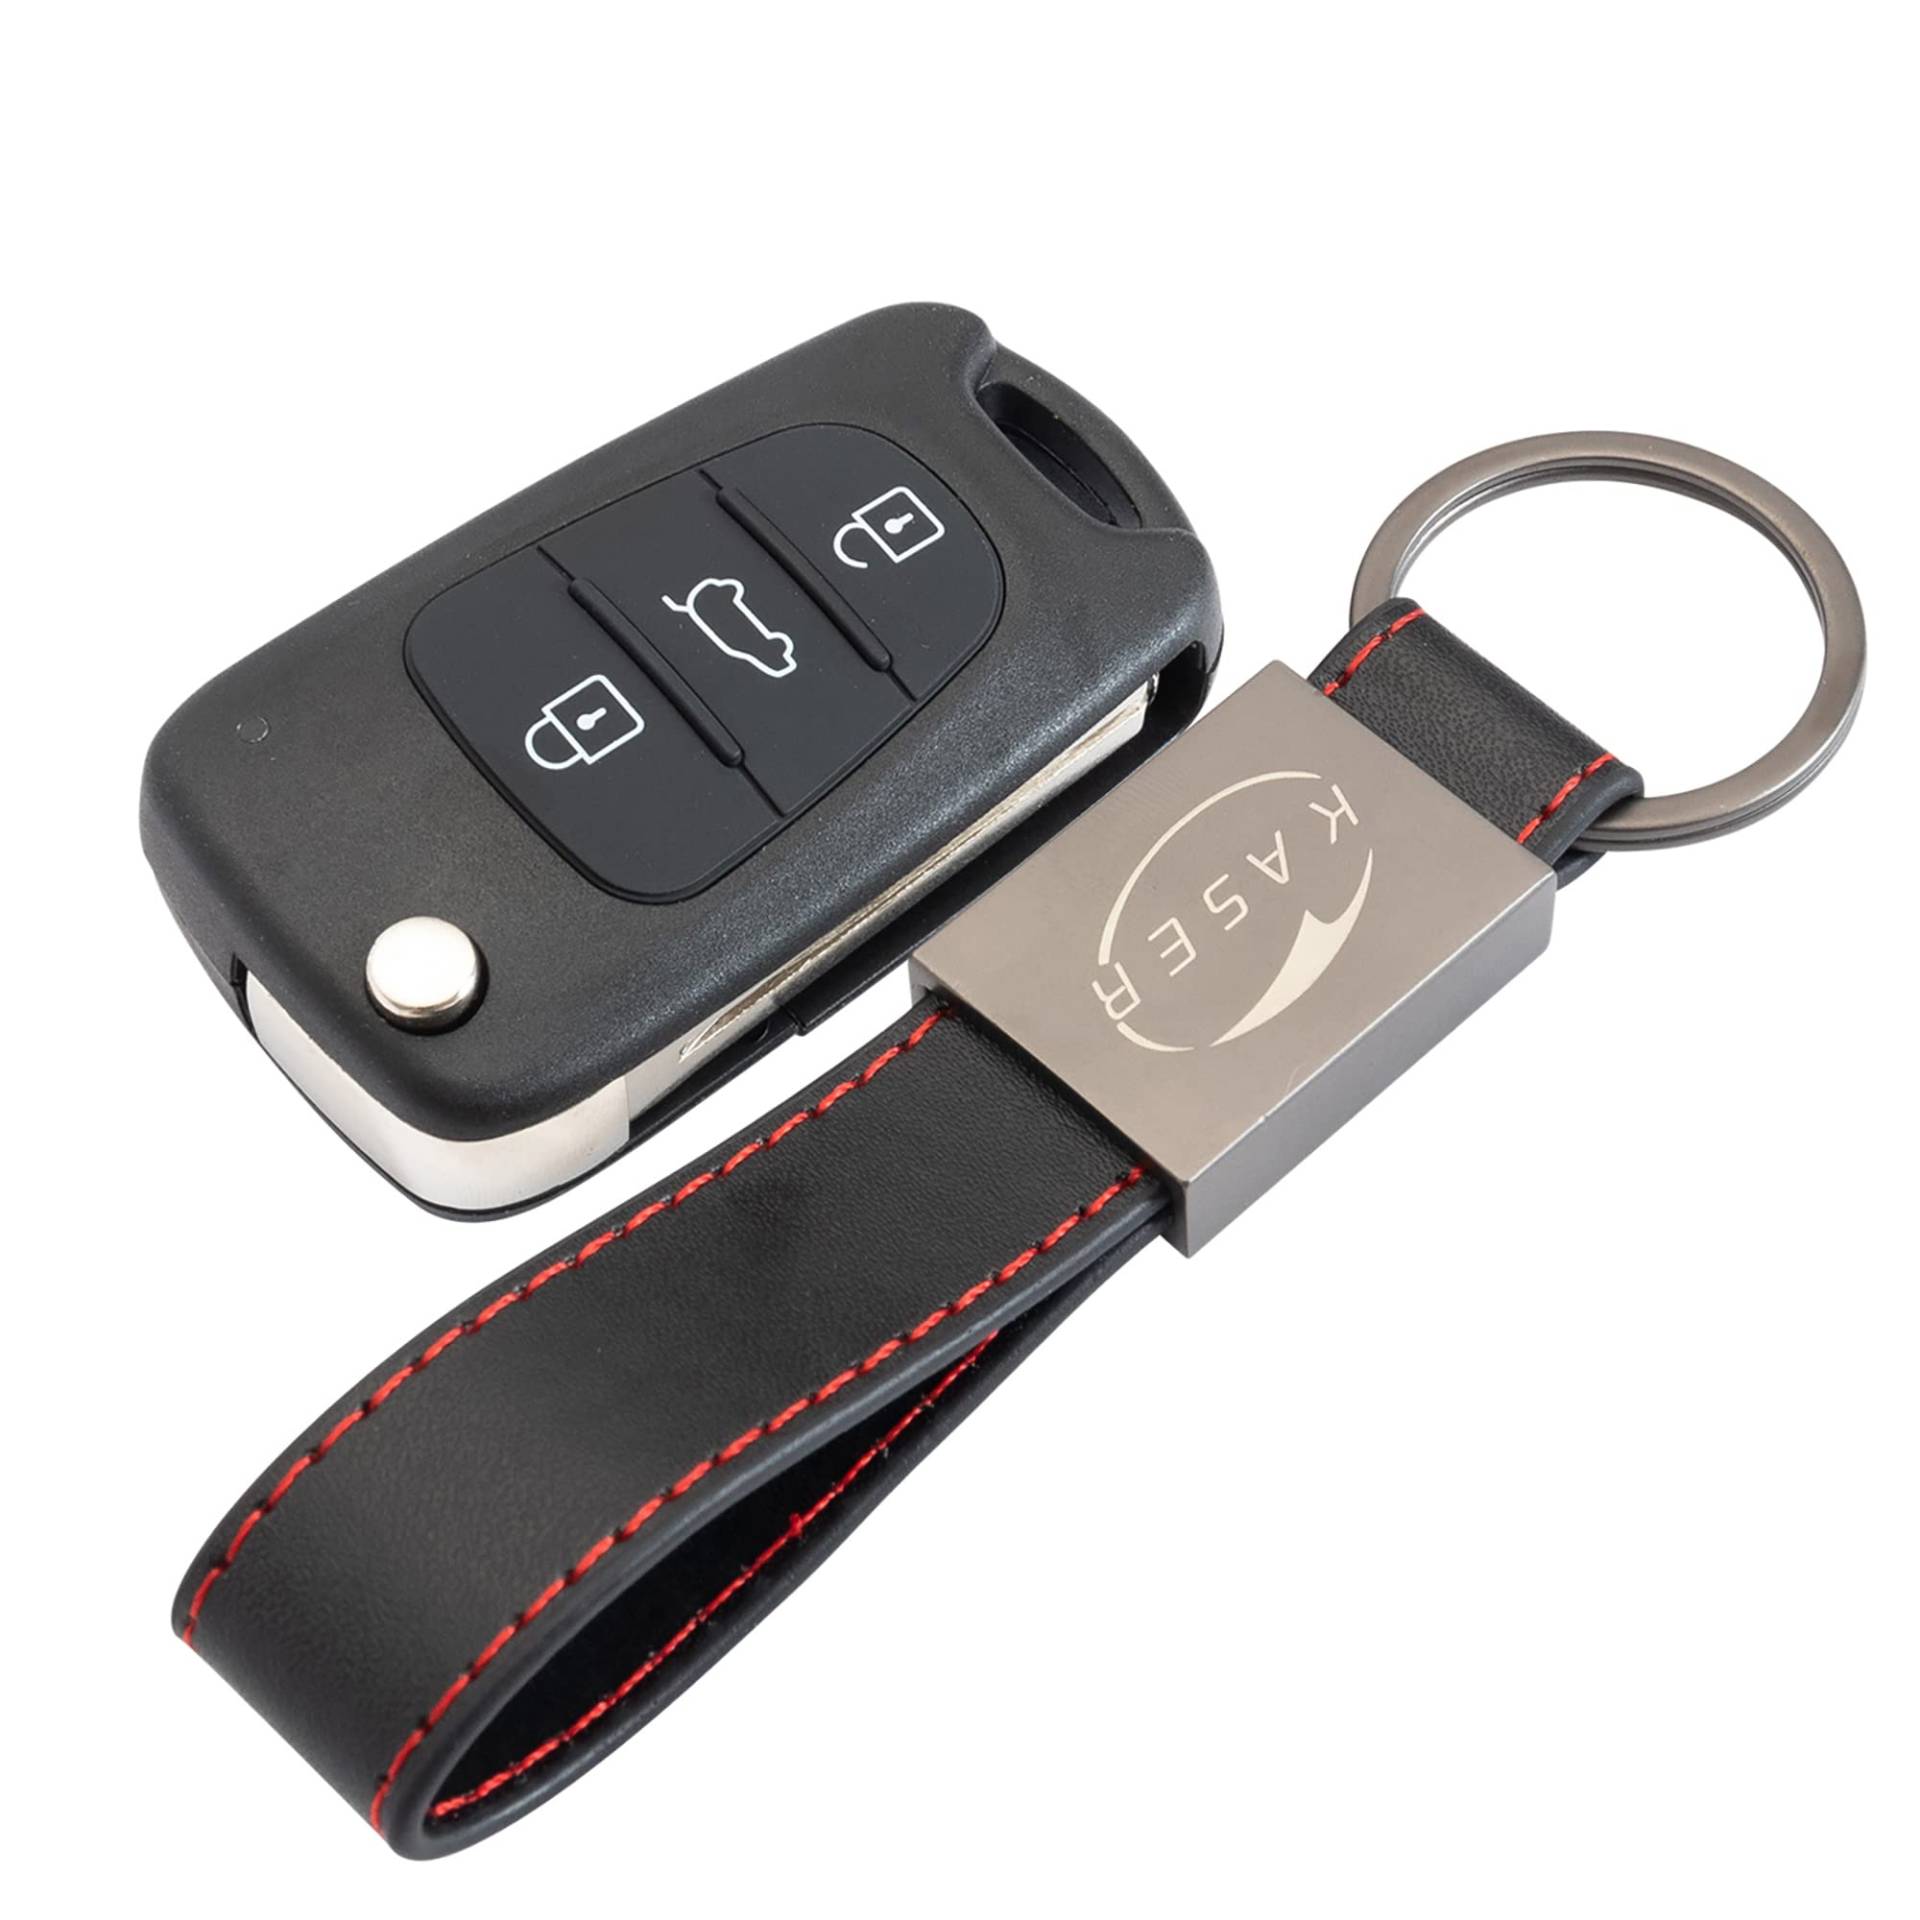 KASER Schlüssel Gehäuse Fernbedienung für Kia 3 Tasten Autoschlüssel Funkschlüssel für Kia Sportage Venga Piccanto Rio mit Leder Schlüsselanhänger von Kaser